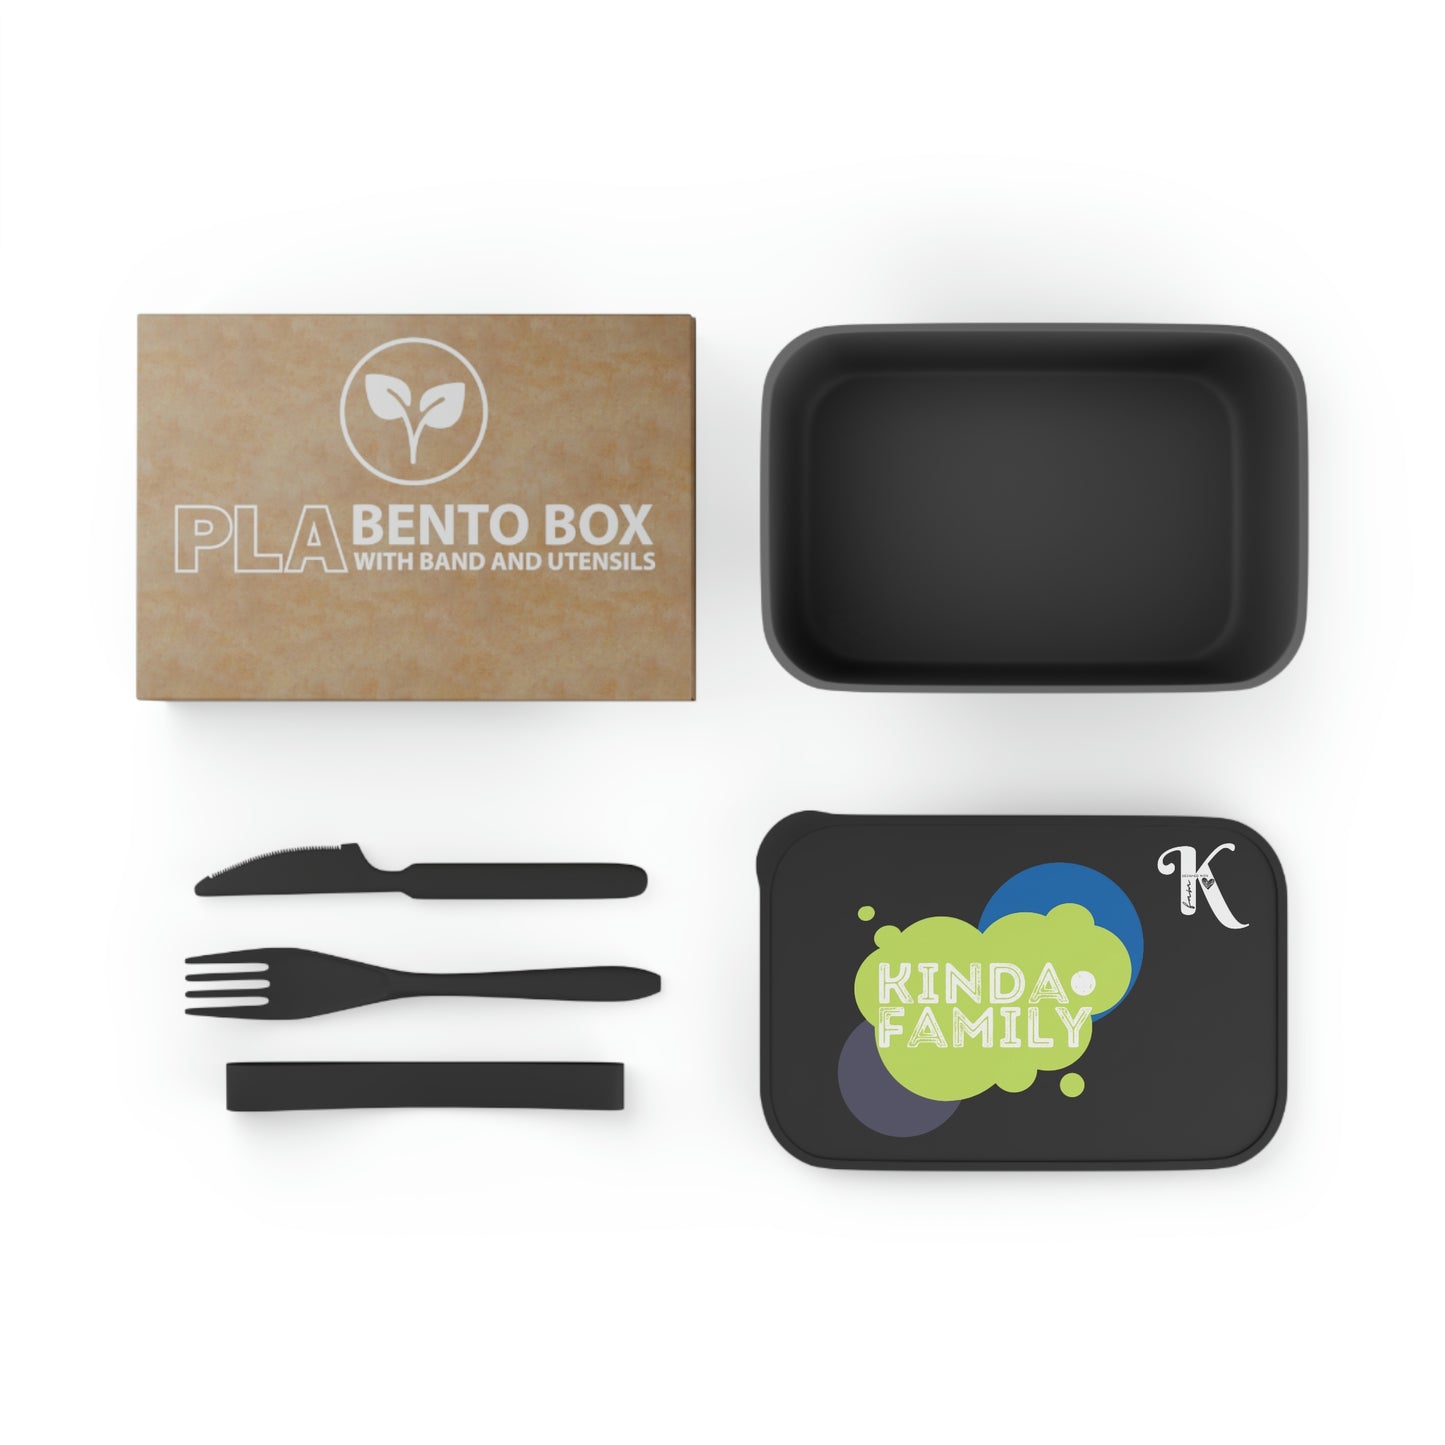 KindaFamily > PLA Bento Box con Banda y Utensilios / PLA Bento Box with Band and Utensils